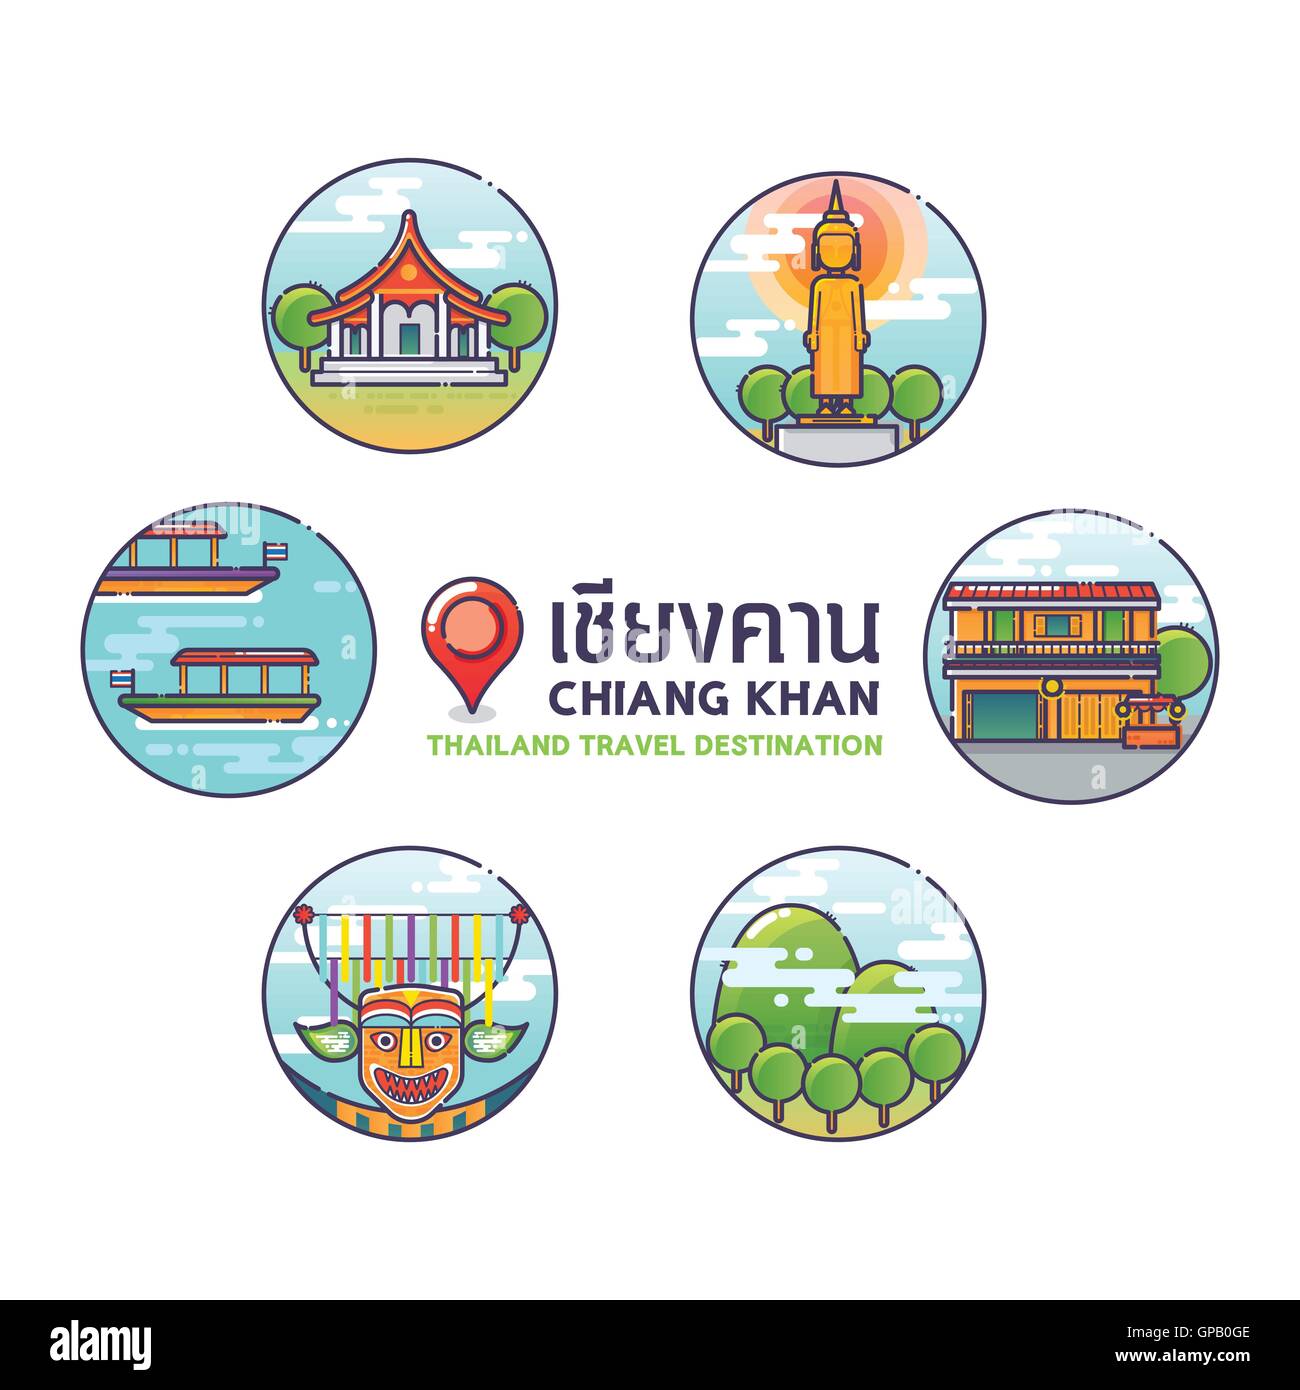 Vector Illustration de Chiang Khan icônes colorées,Thailand Travel Destination Concept.Trendy style linéaire. Illustration de Vecteur